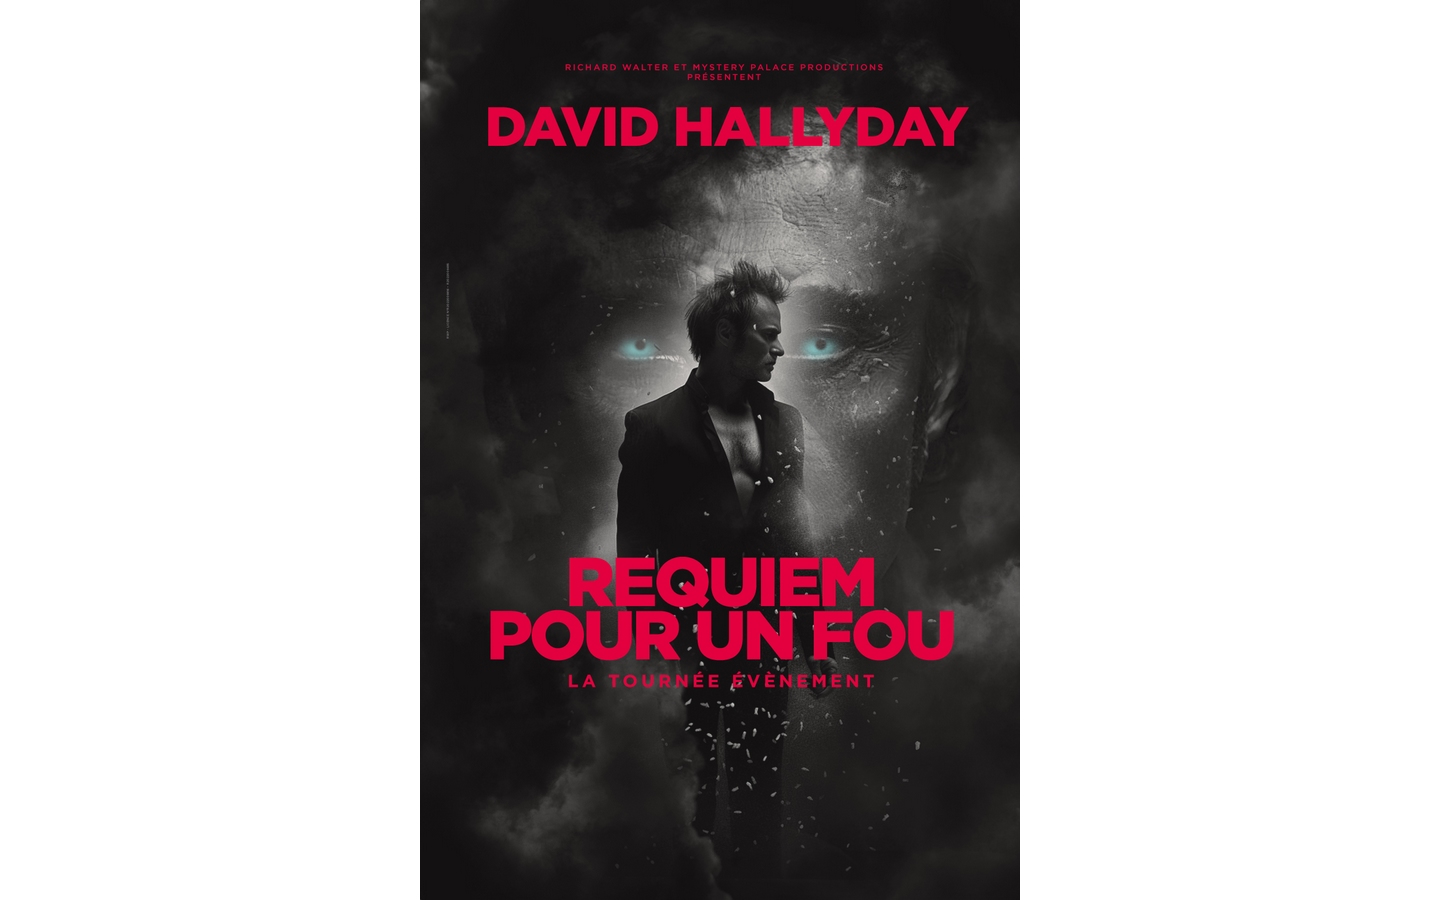 Concert: David Hallyday Requiem pour un fou - Guide Béarn Pyrénées